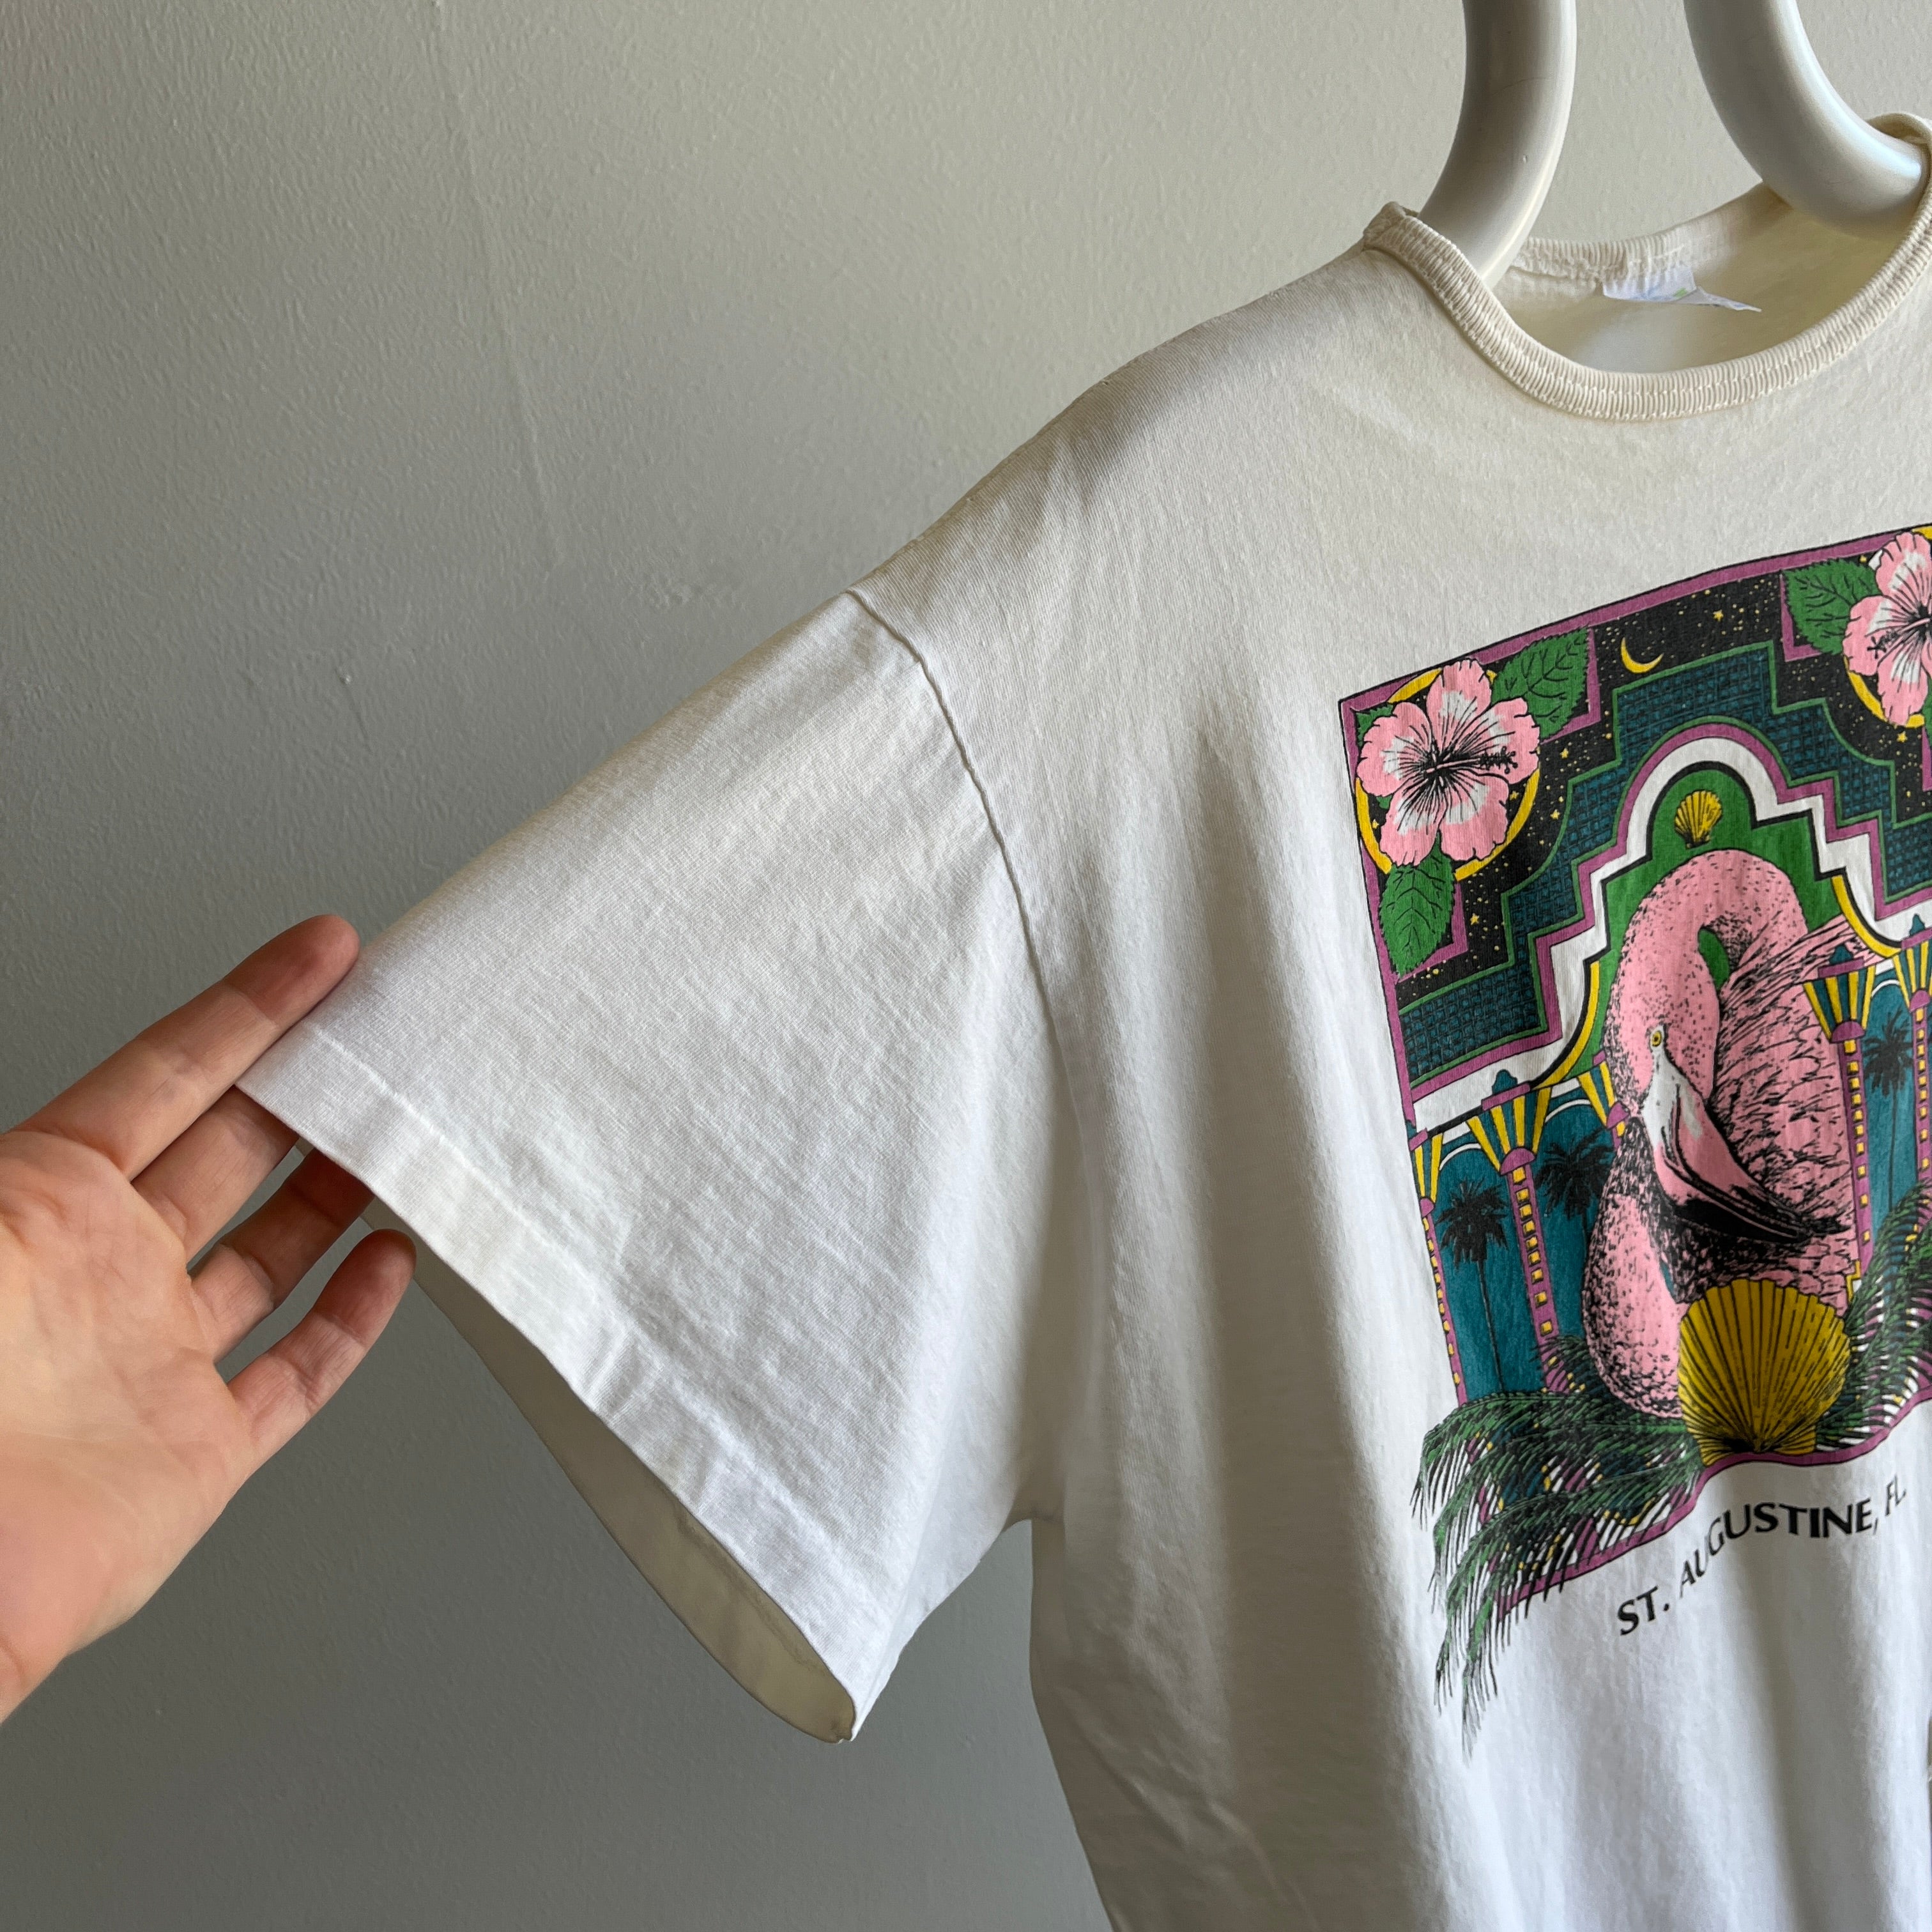 Années 1990 St. Augustine, Floride T-shirt à poche extra longue - Snacks !